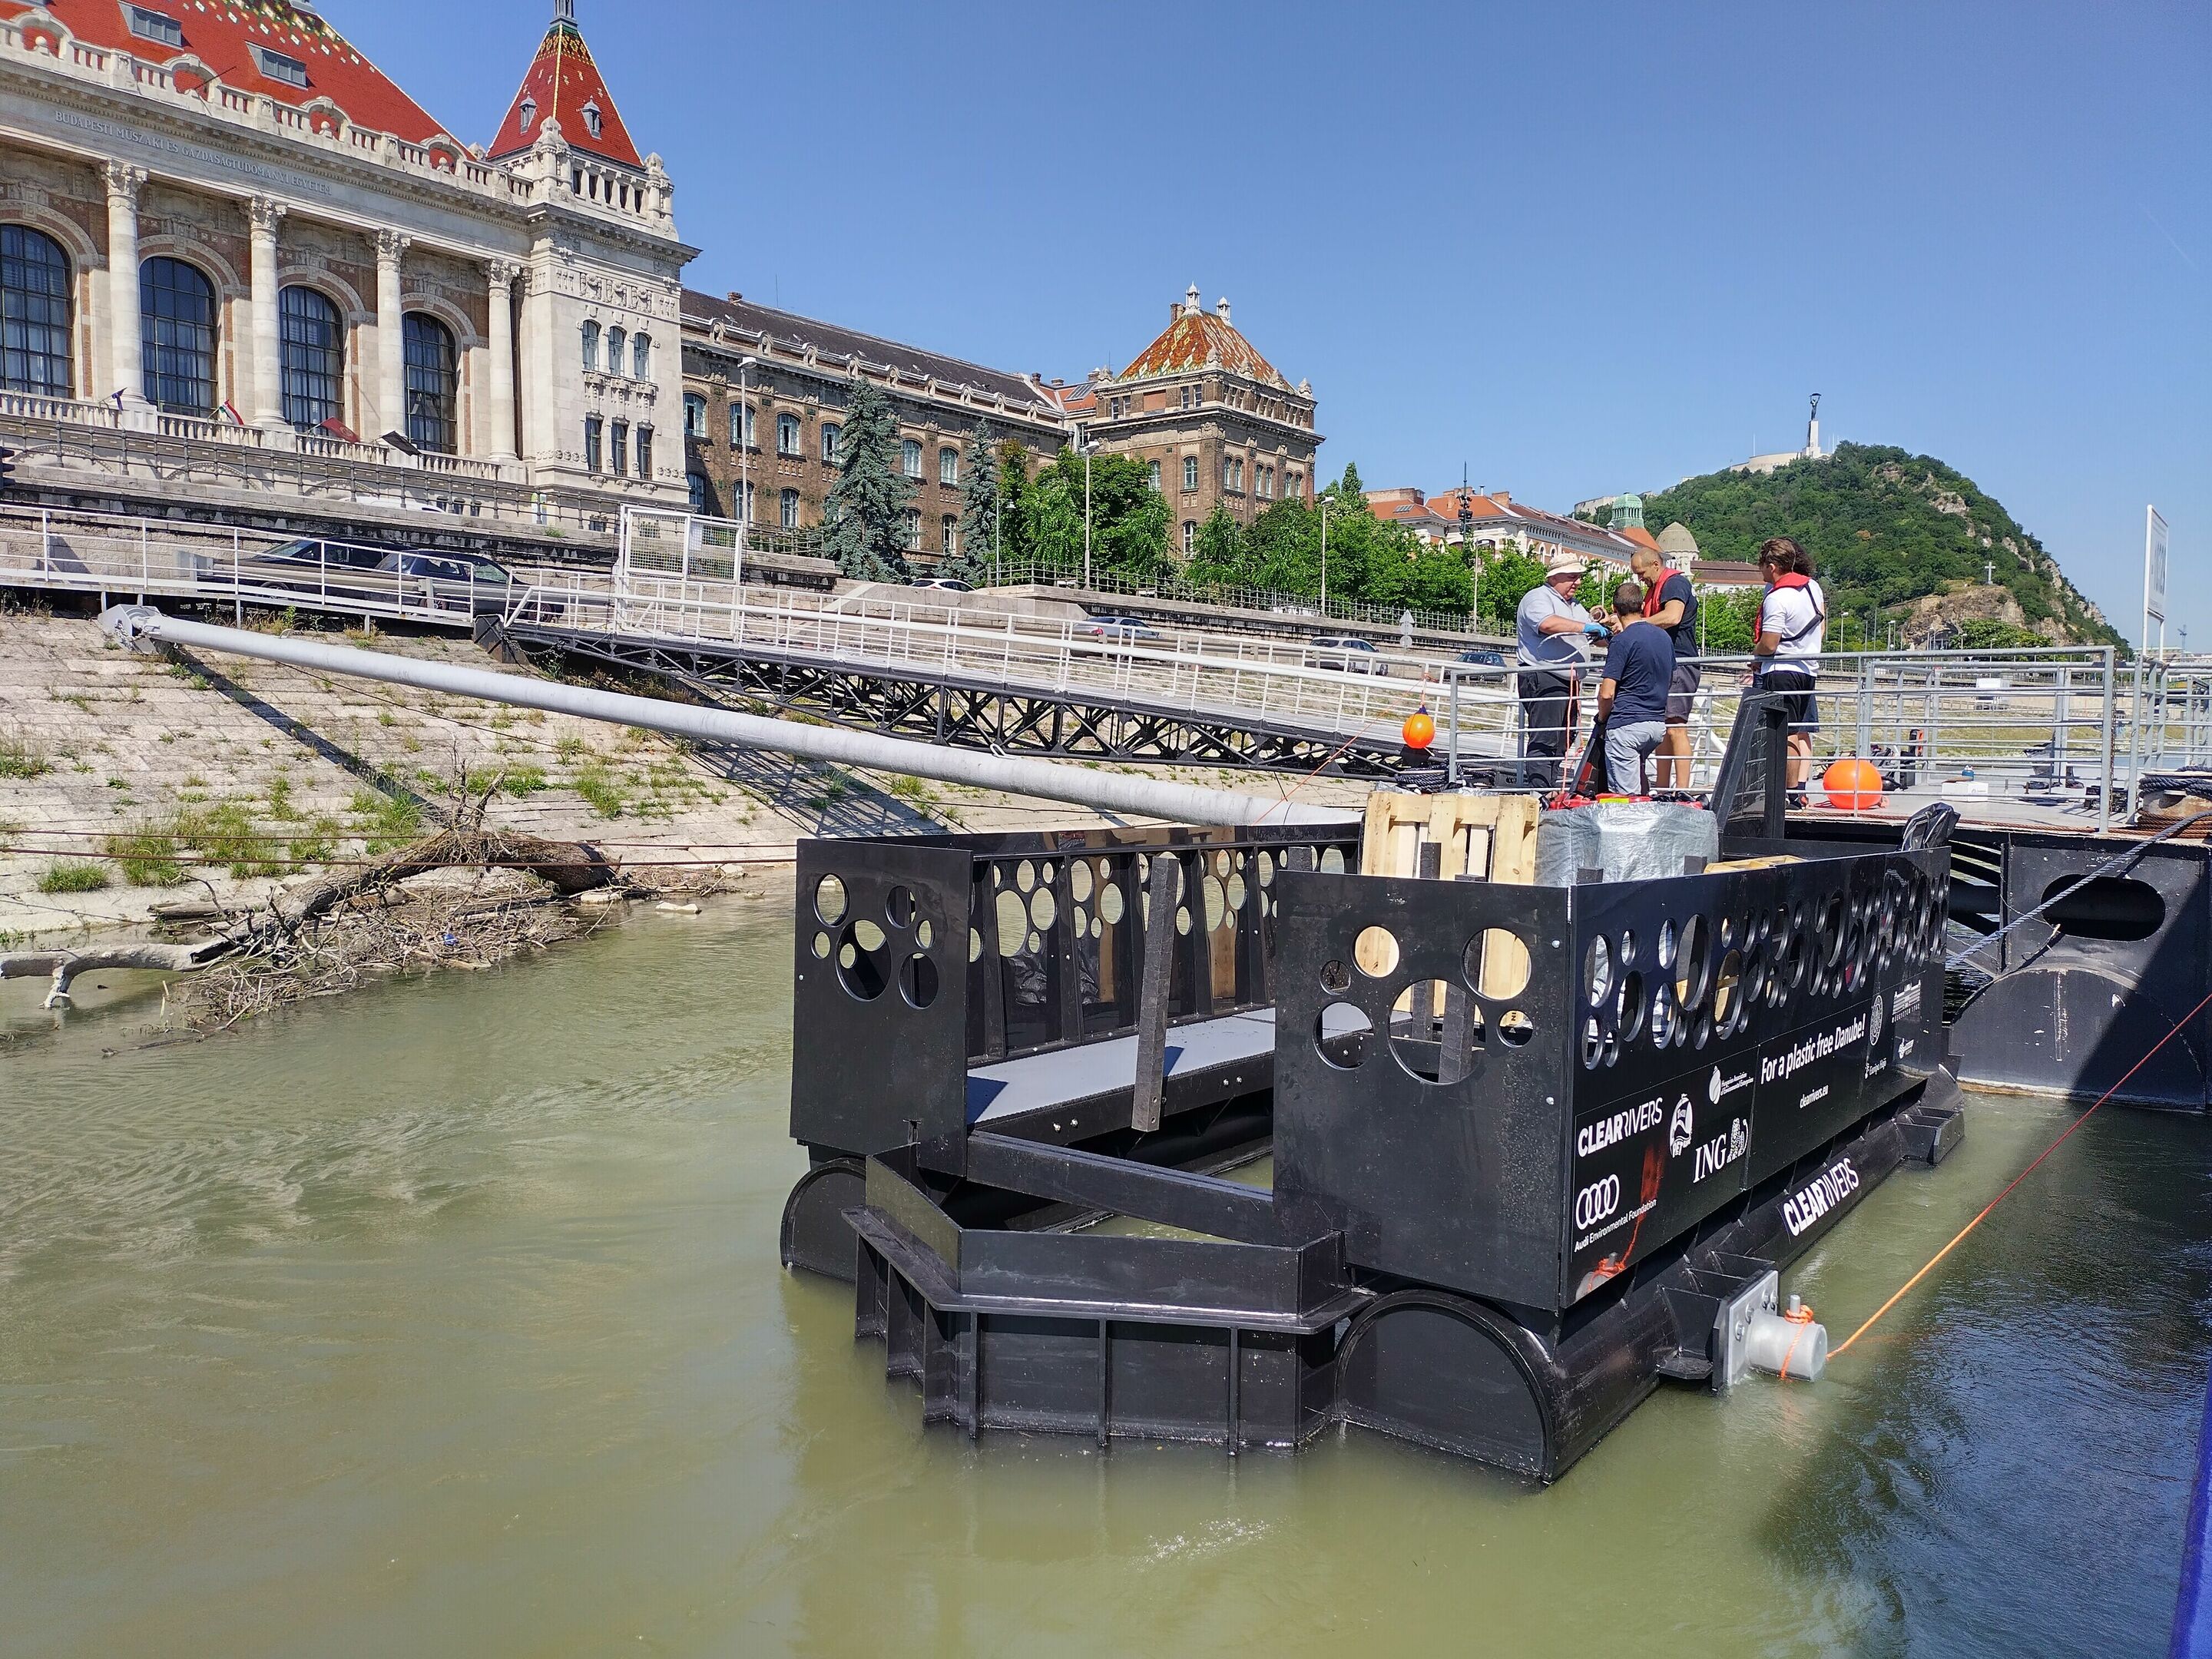 Gegen Plastik in der Donau: Audi Stiftung für Umwelt unterstützt Cleanup-Projekt in Budapest